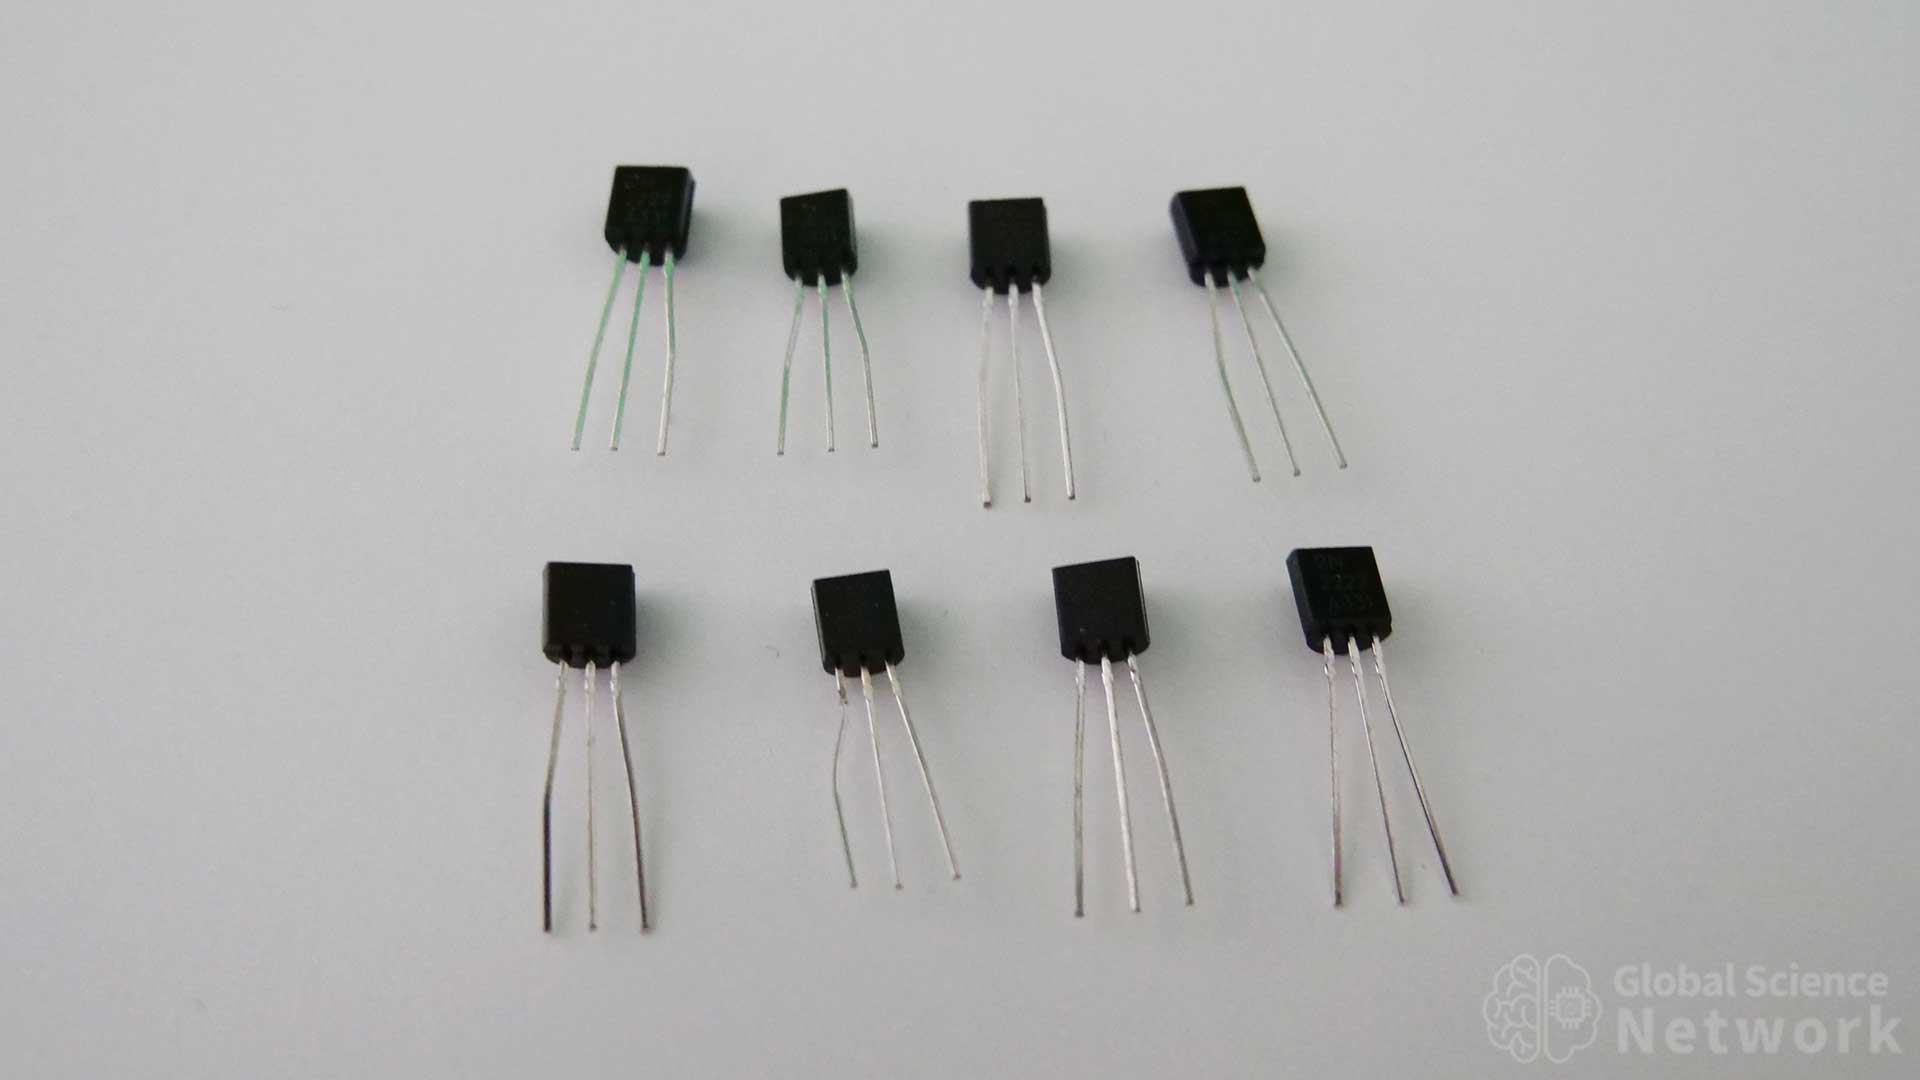 transistors for breadboards